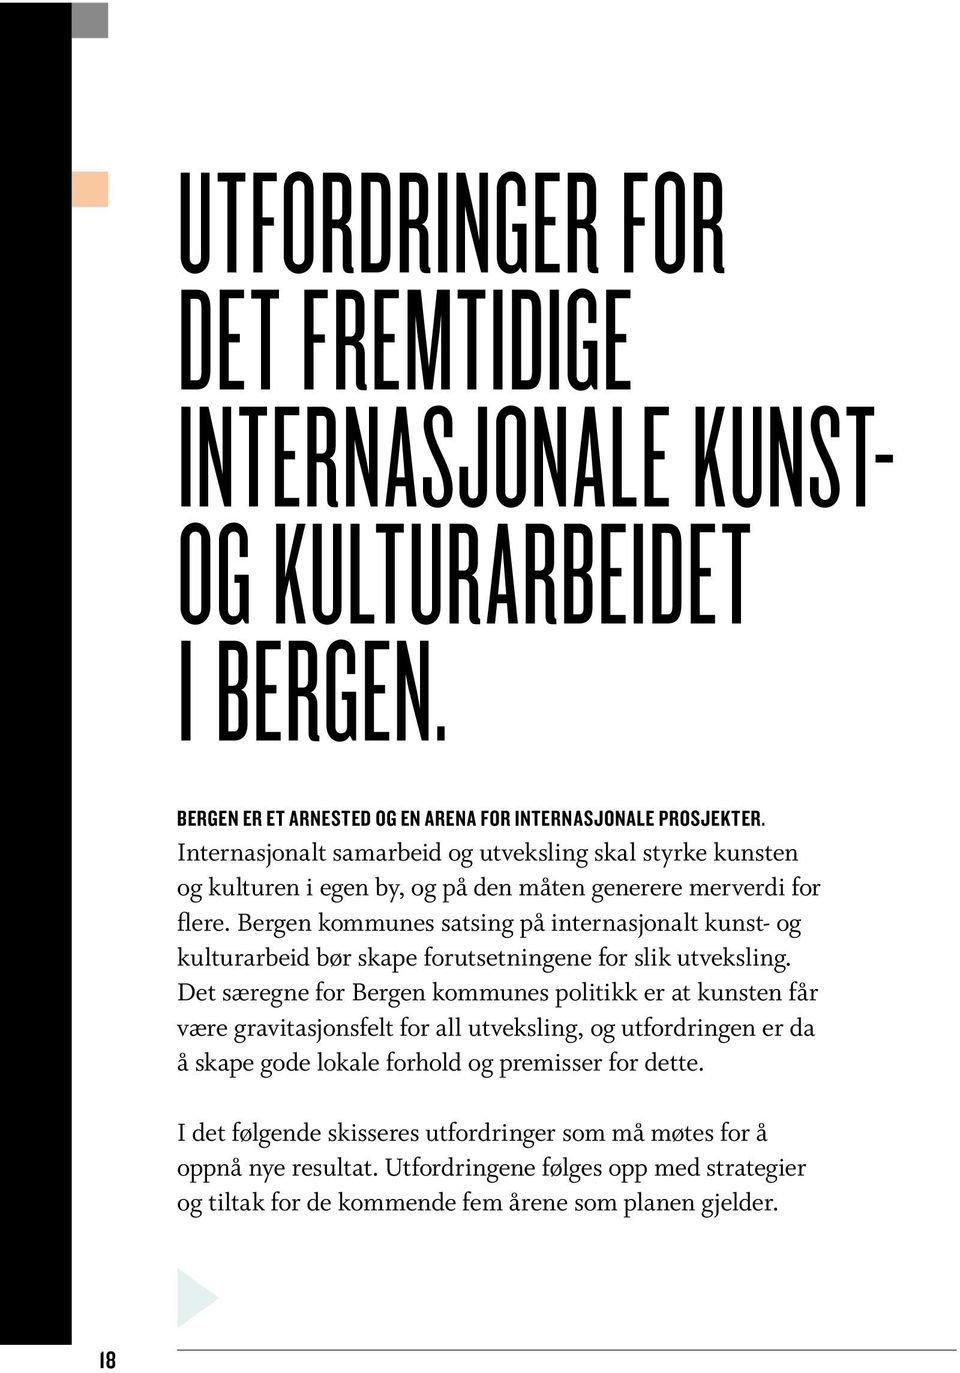 Bergen kommunes satsing på internasjonalt kunst- og kulturarbeid bør skape forutsetningene for slik utveksling.